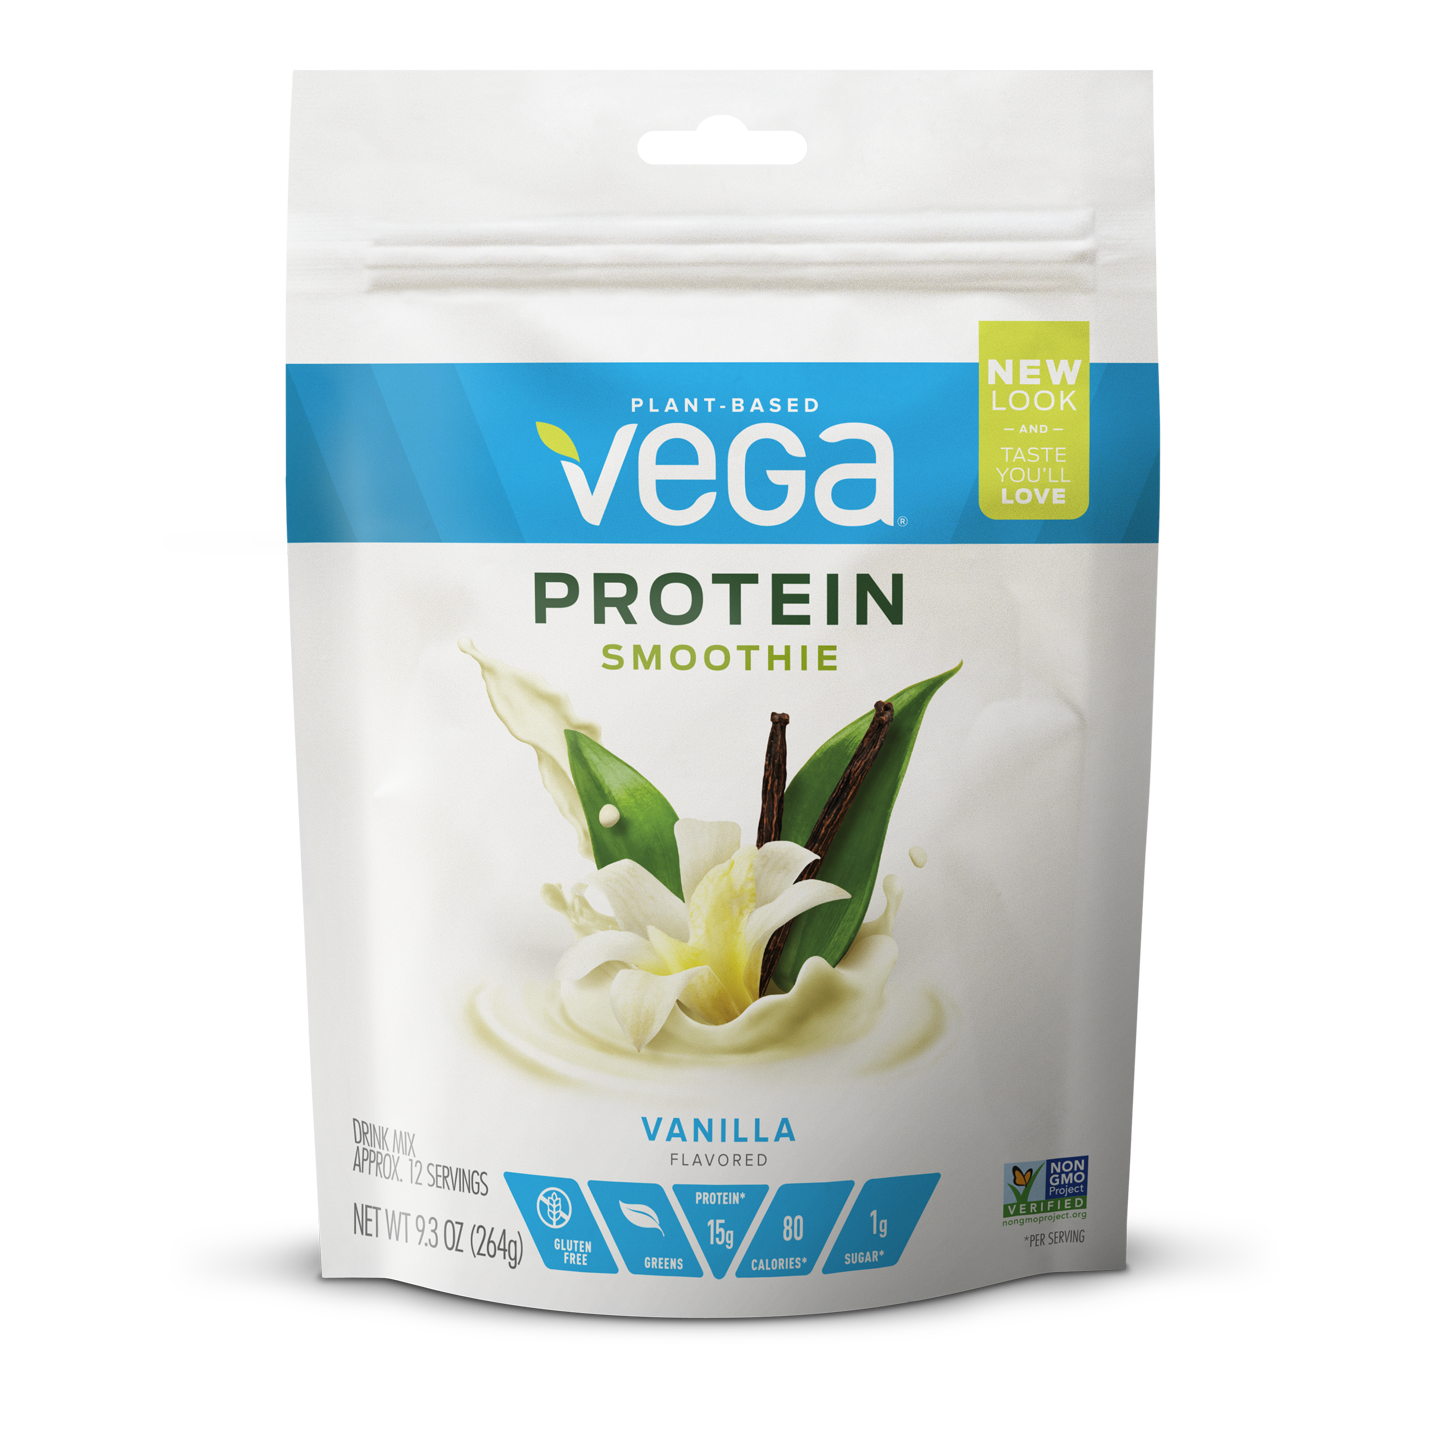 Vega® Protein Smoothie - Plant-Based Protein Powder